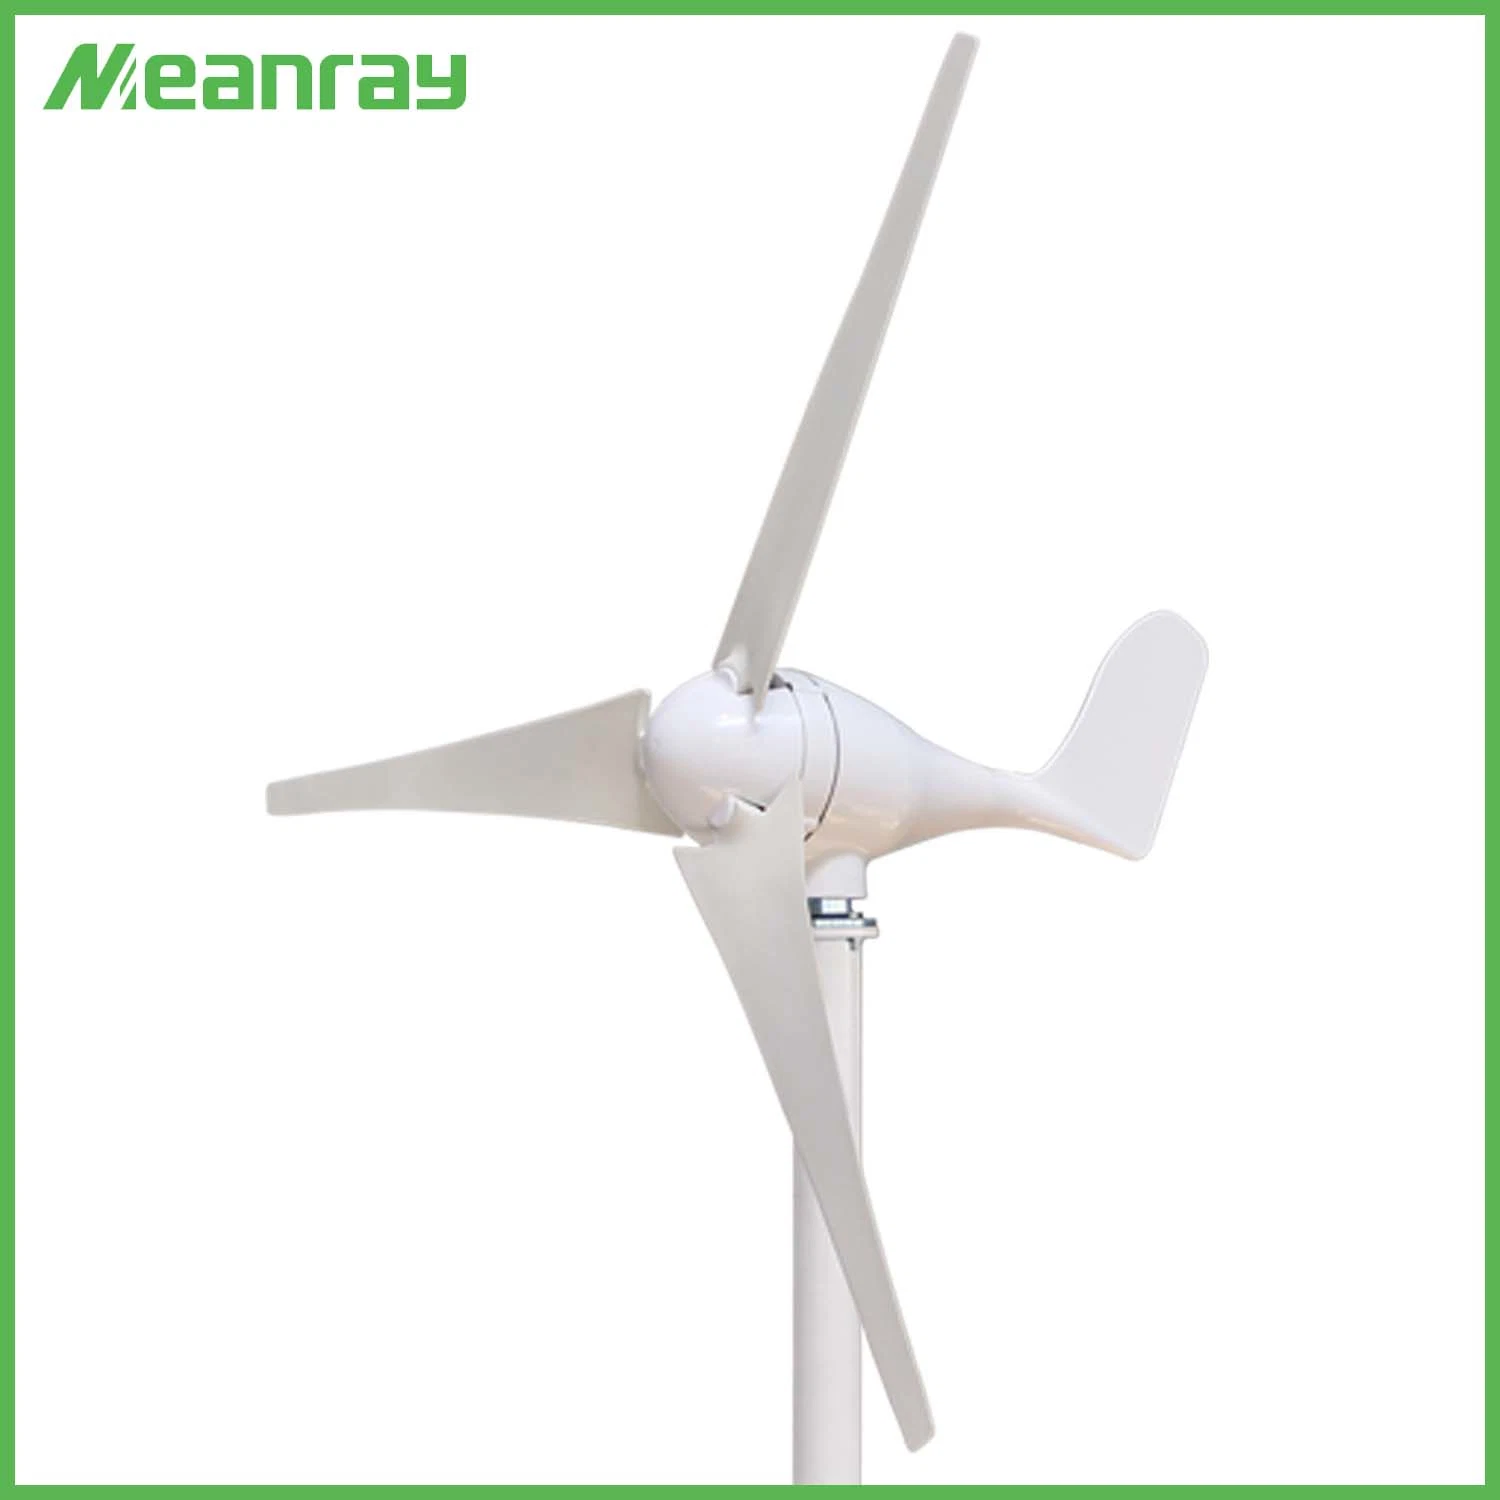 5kW Windturbinengenerator für Wind- und Solarstrom